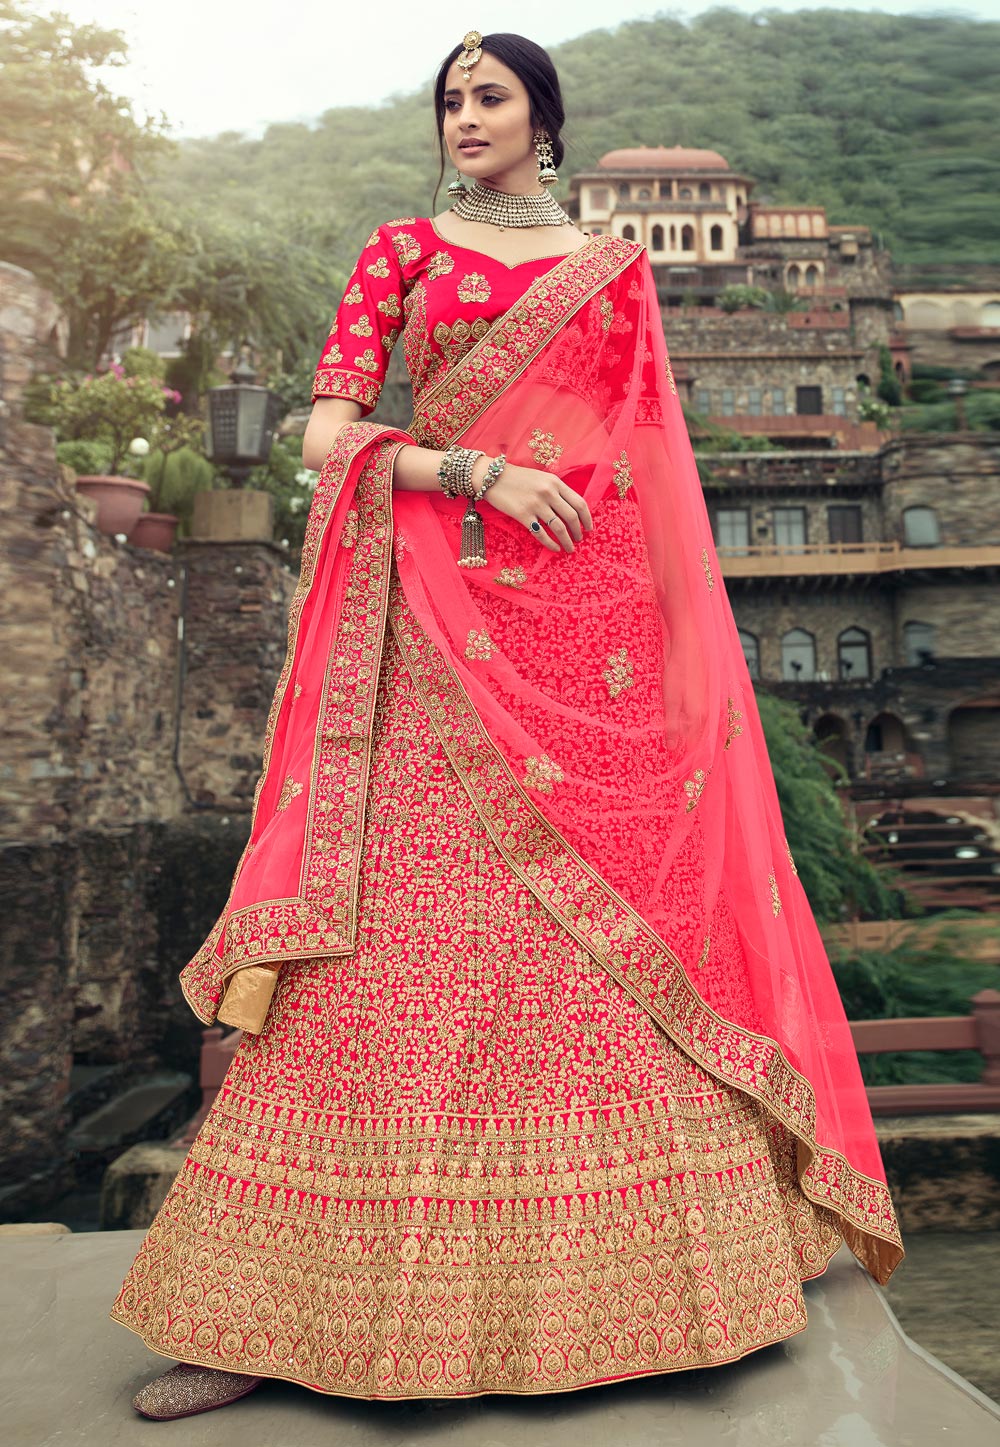 VJV Fashion in surat - manufacturer Designer saree, Embroidered Saree  gujarat